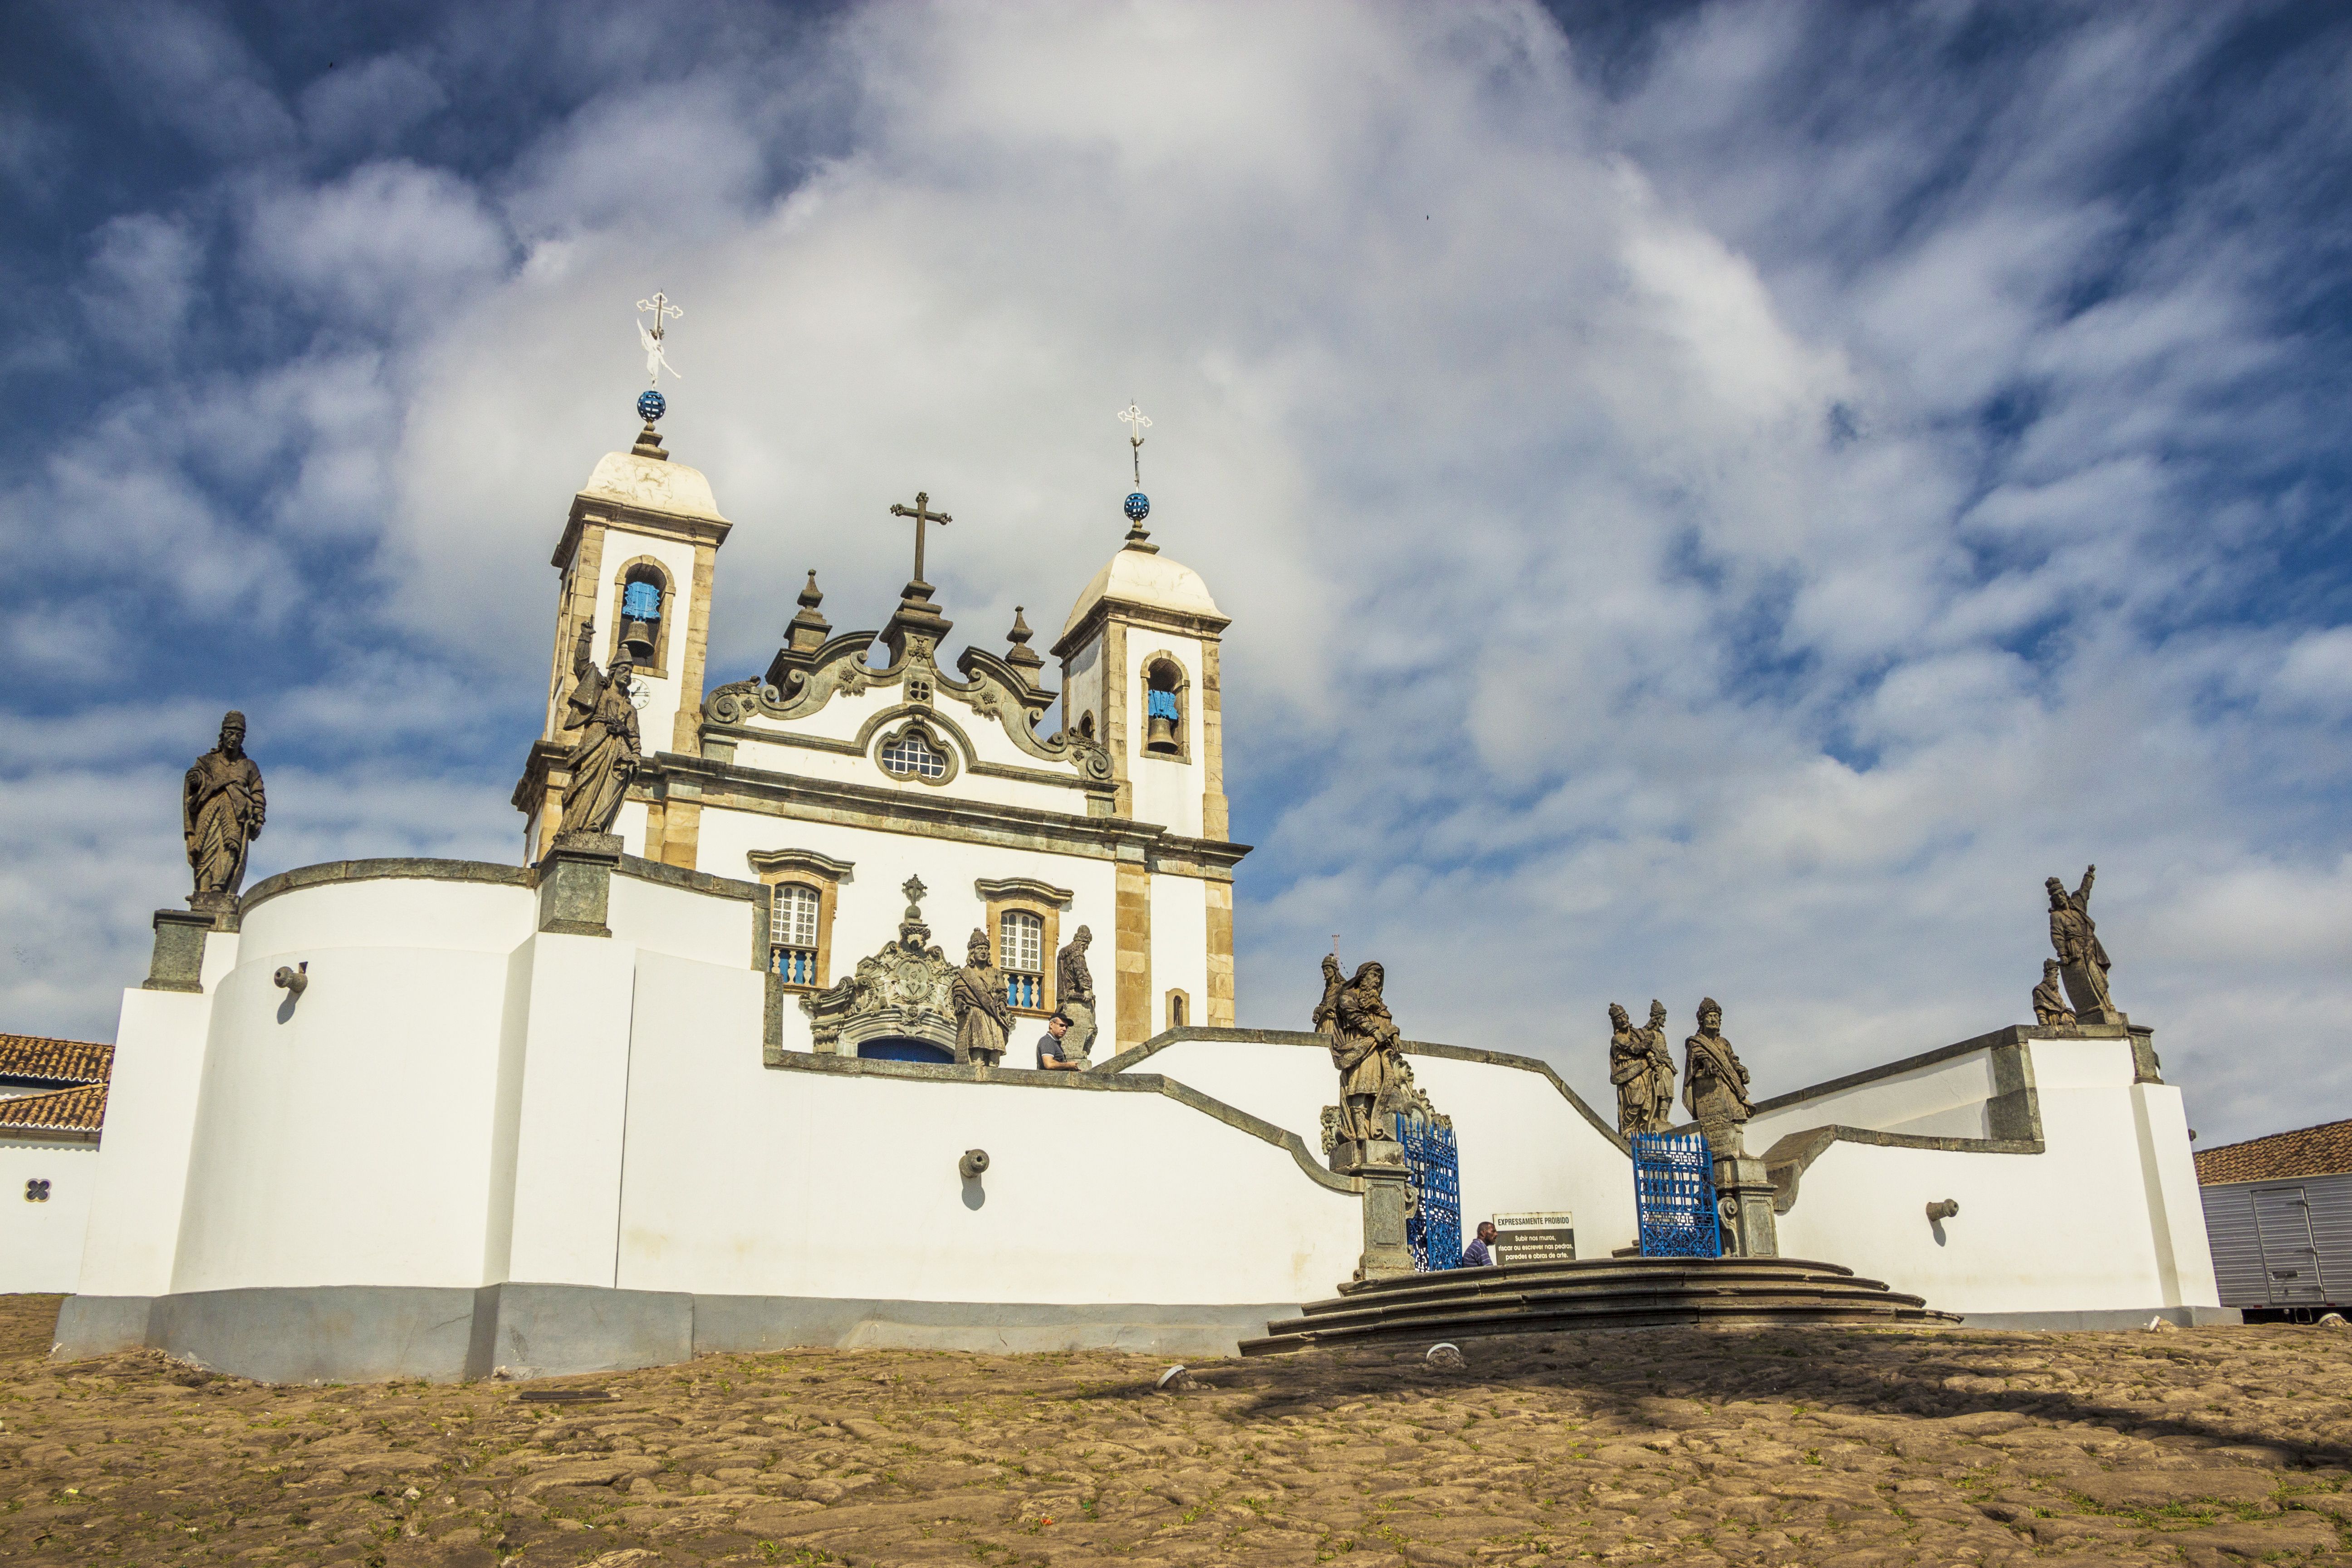 Sanctuary of Bom Jesus do Congonhas, Minas Gerais, Brazil